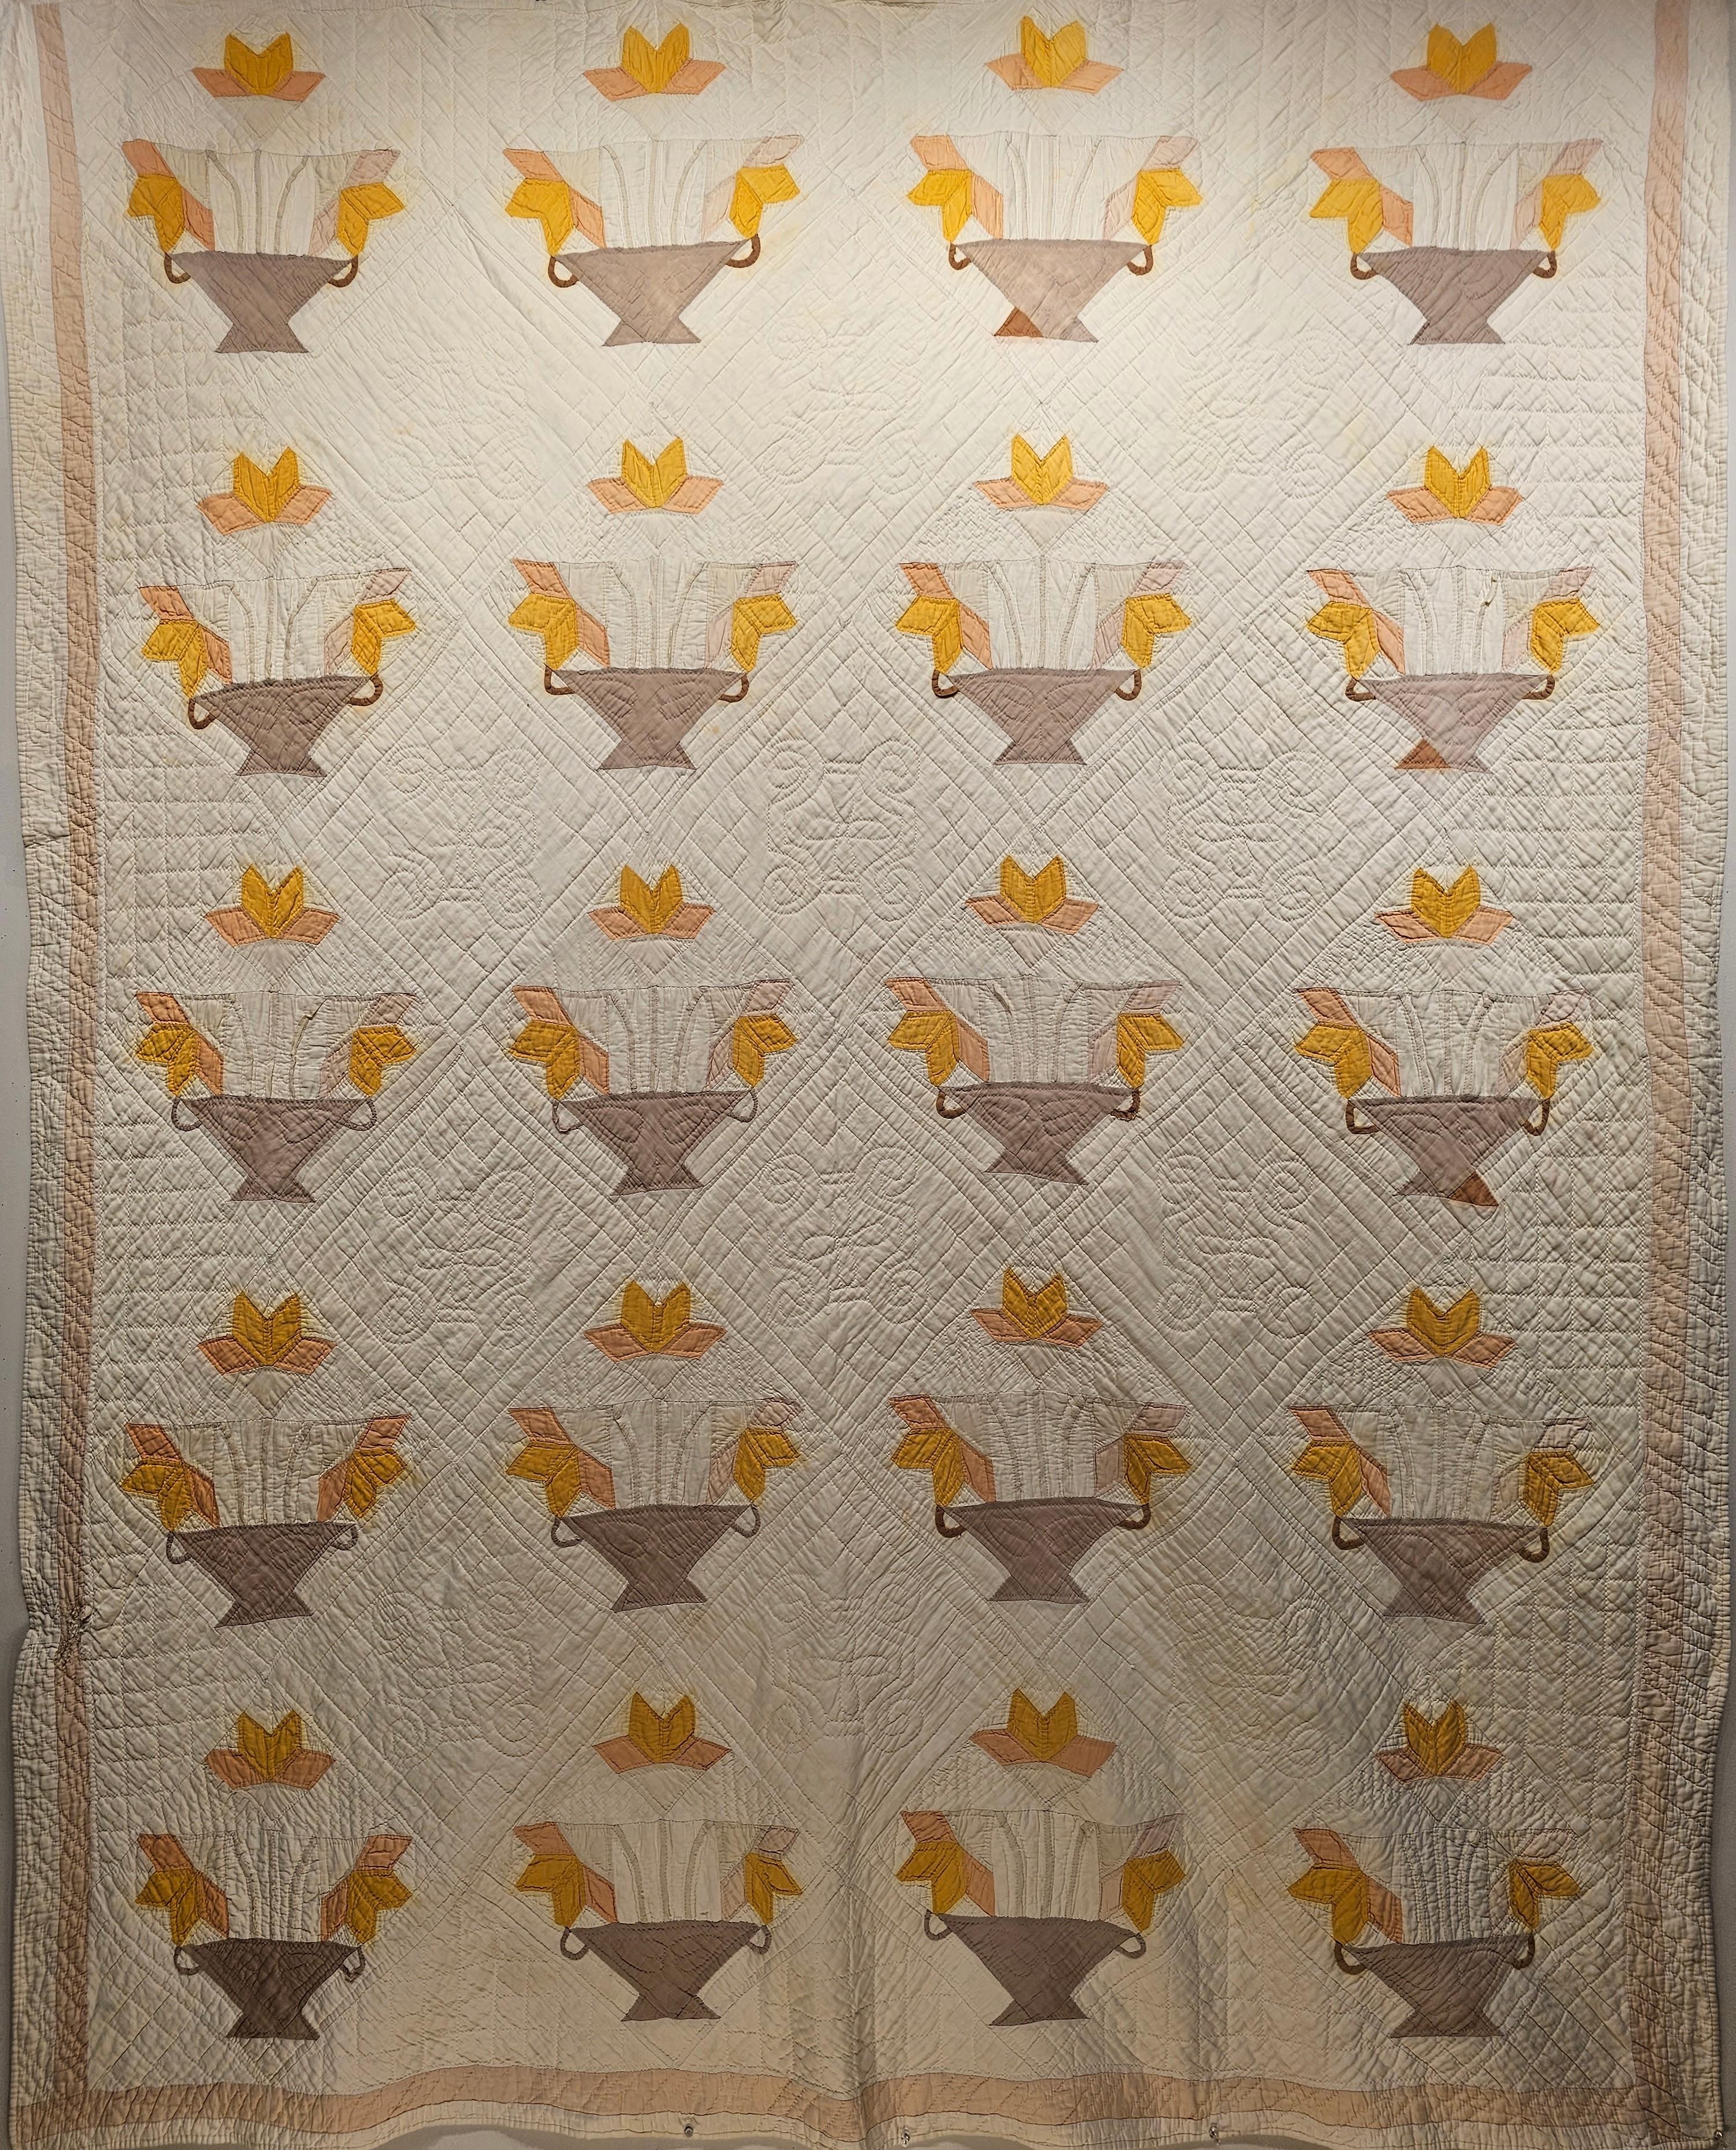 Ce magnifique quilt américain en appliques a été cousu à la main au début du 20e siècle. L'American Applique Quilt est un motif de 